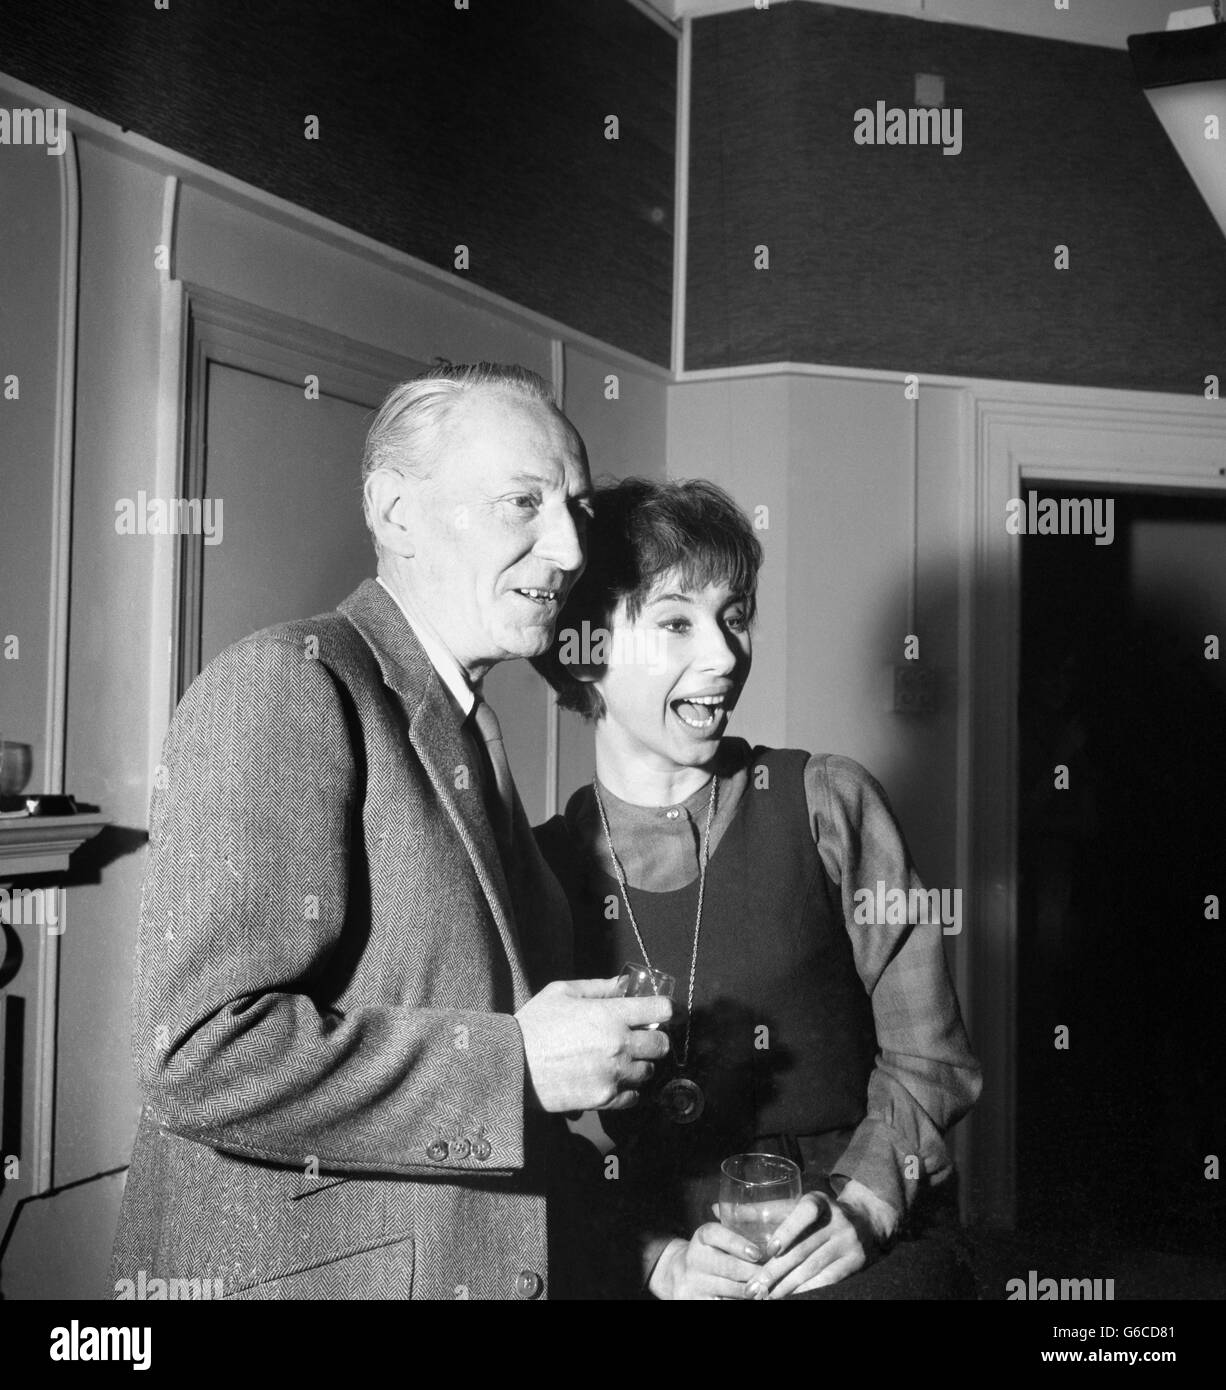 Televisión - BBC - Doctor Who - William Hartnell. El actor William Hartnell fotografió con la actriz Carole Ann Ford, que interpretó a Doctor Who como compañero original. Foto de stock